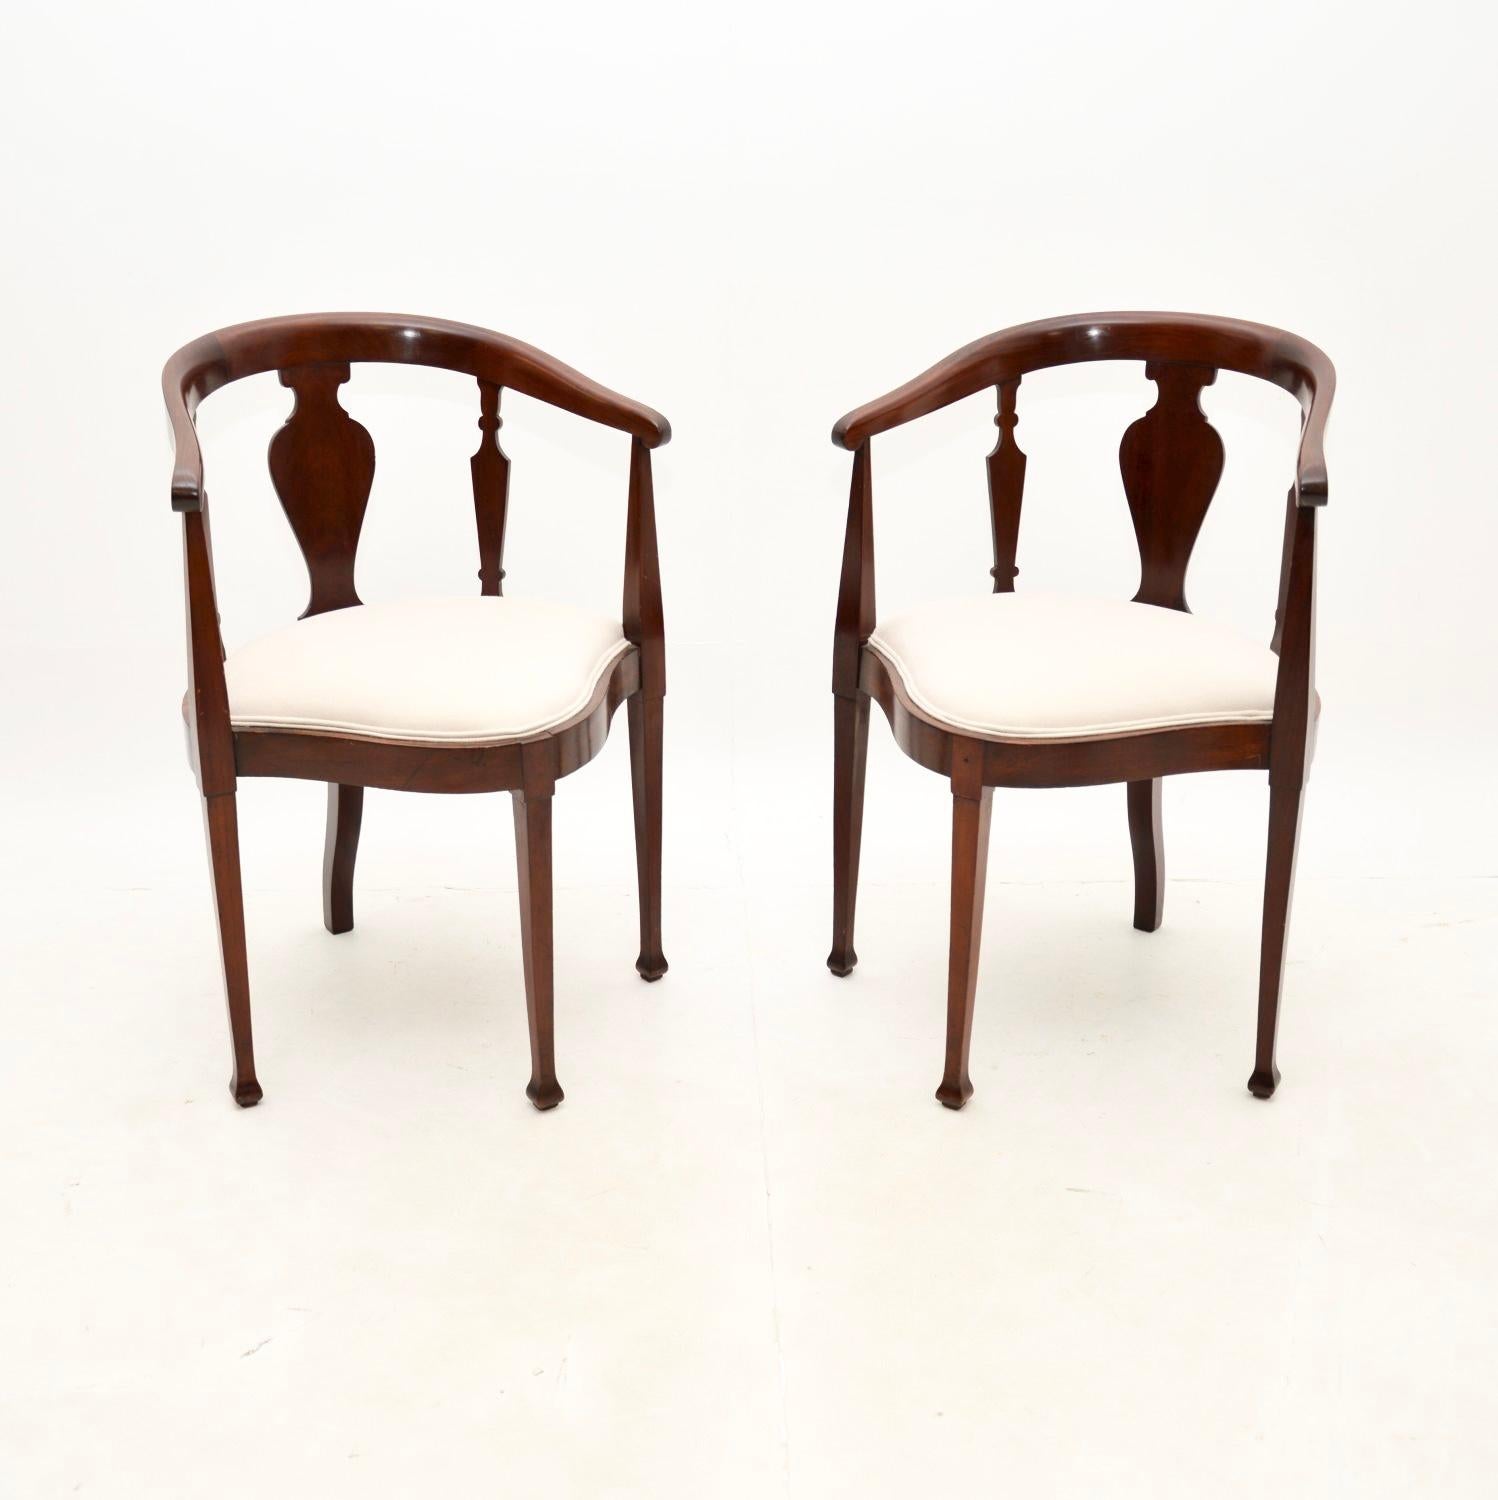 Une fantastique paire de chaises d'angle anciennes de l'époque édouardienne. Fabriqués en Angleterre, ils datent de la période 1900-1910.

Ils sont d'une superbe qualité, avec un design assez simple mais magnifique. Les cadres ont une forme